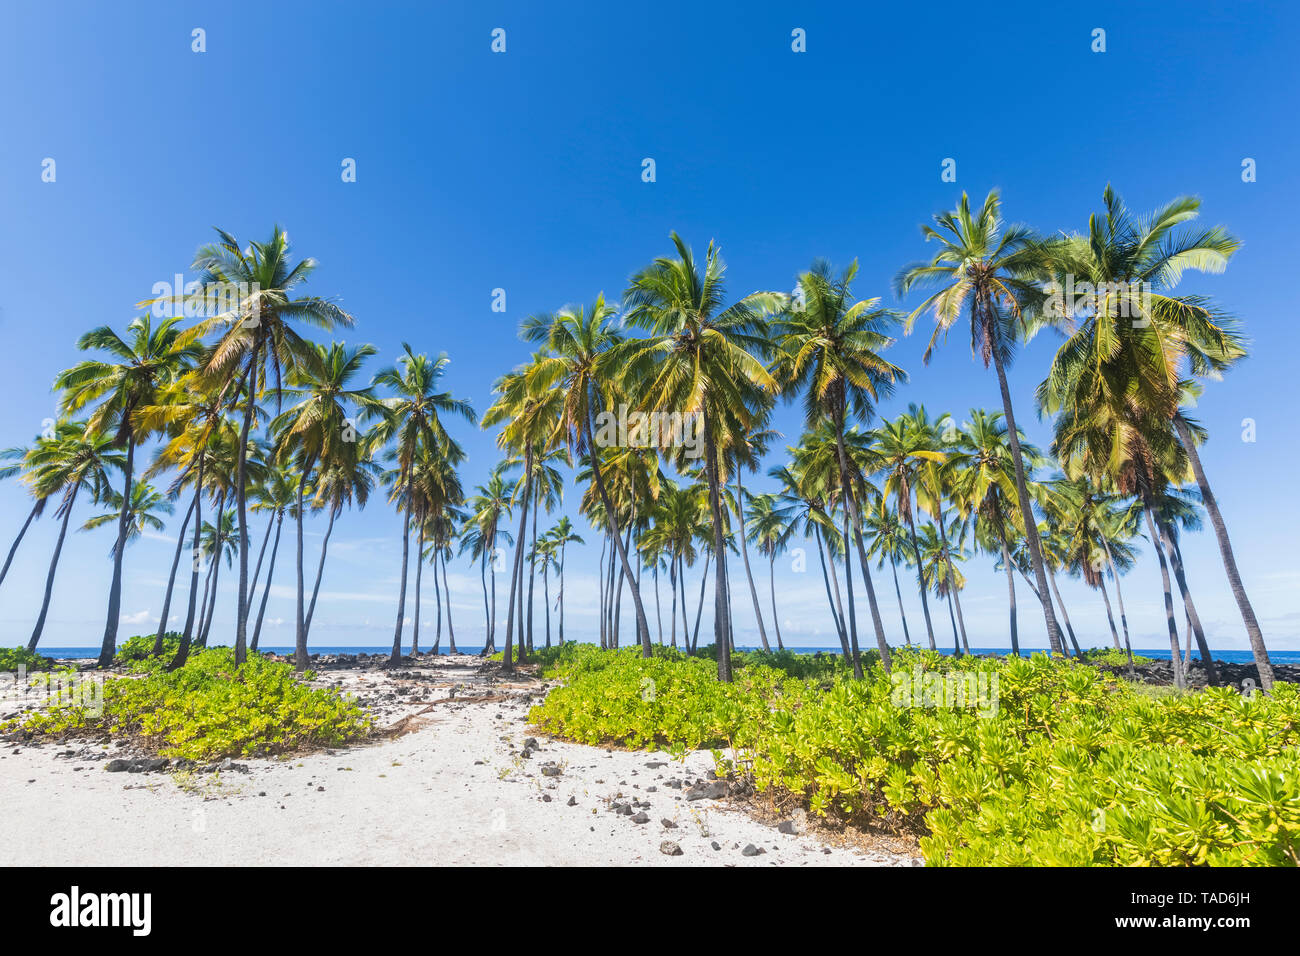 USA, Hawaii, Big Island, Pu'uhonua o Honaunau National Park, Palms at the beach Stock Photo